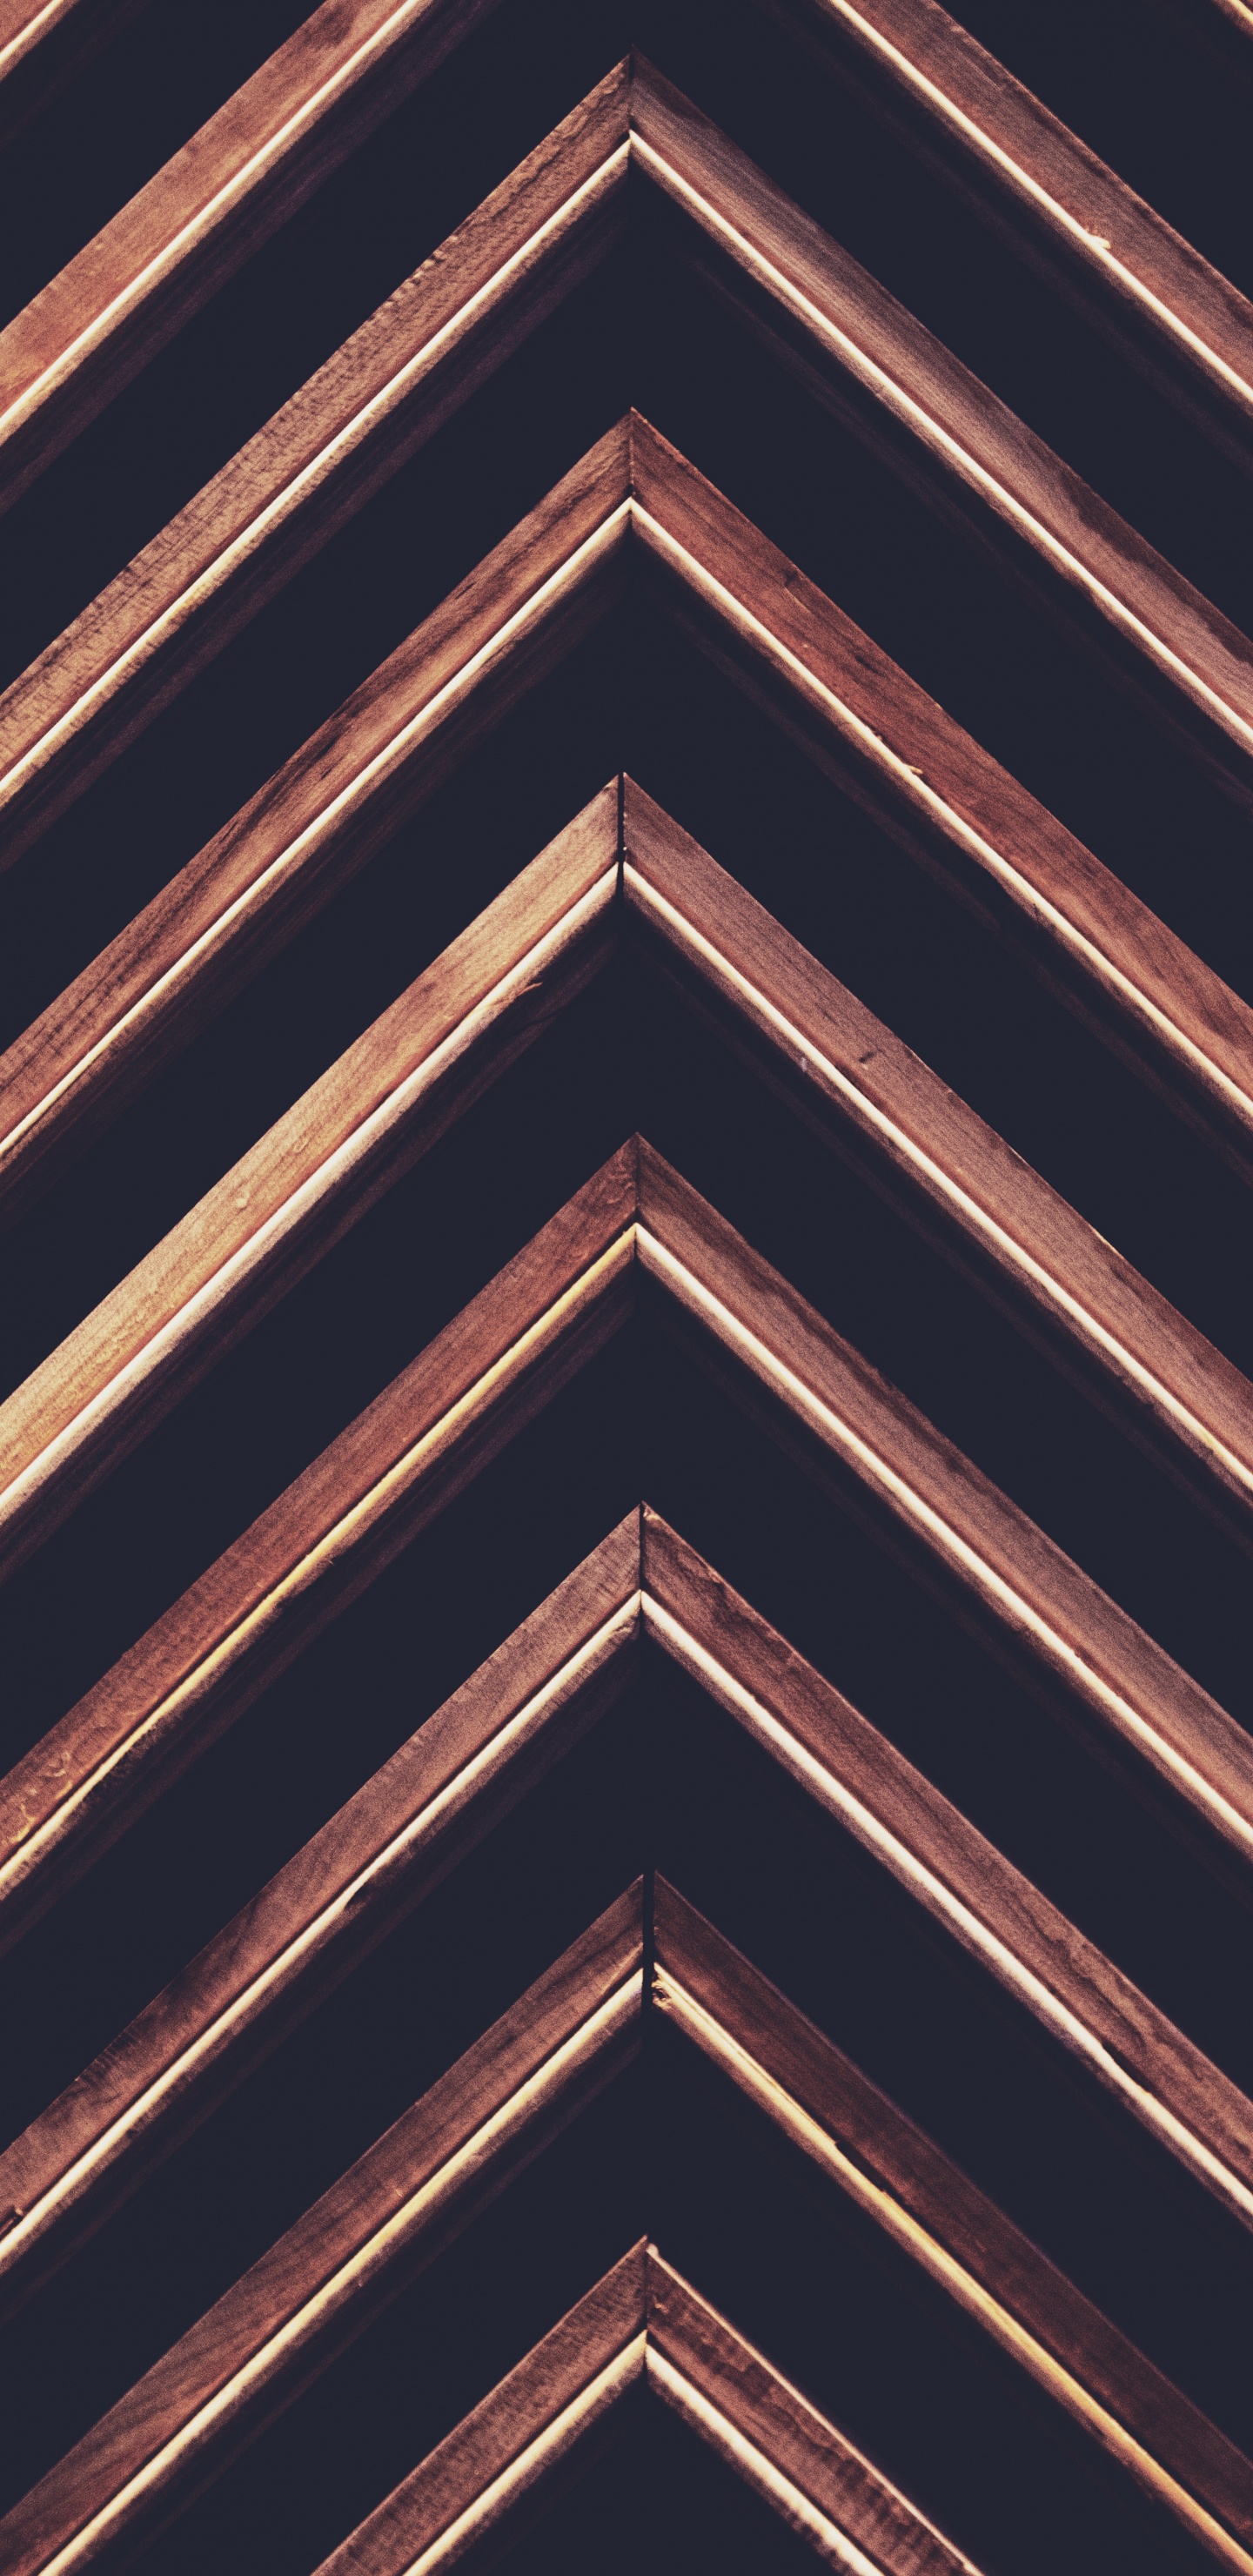 纹理, 对称, 木, 木染色, 砖 壁纸 1440x2960 允许